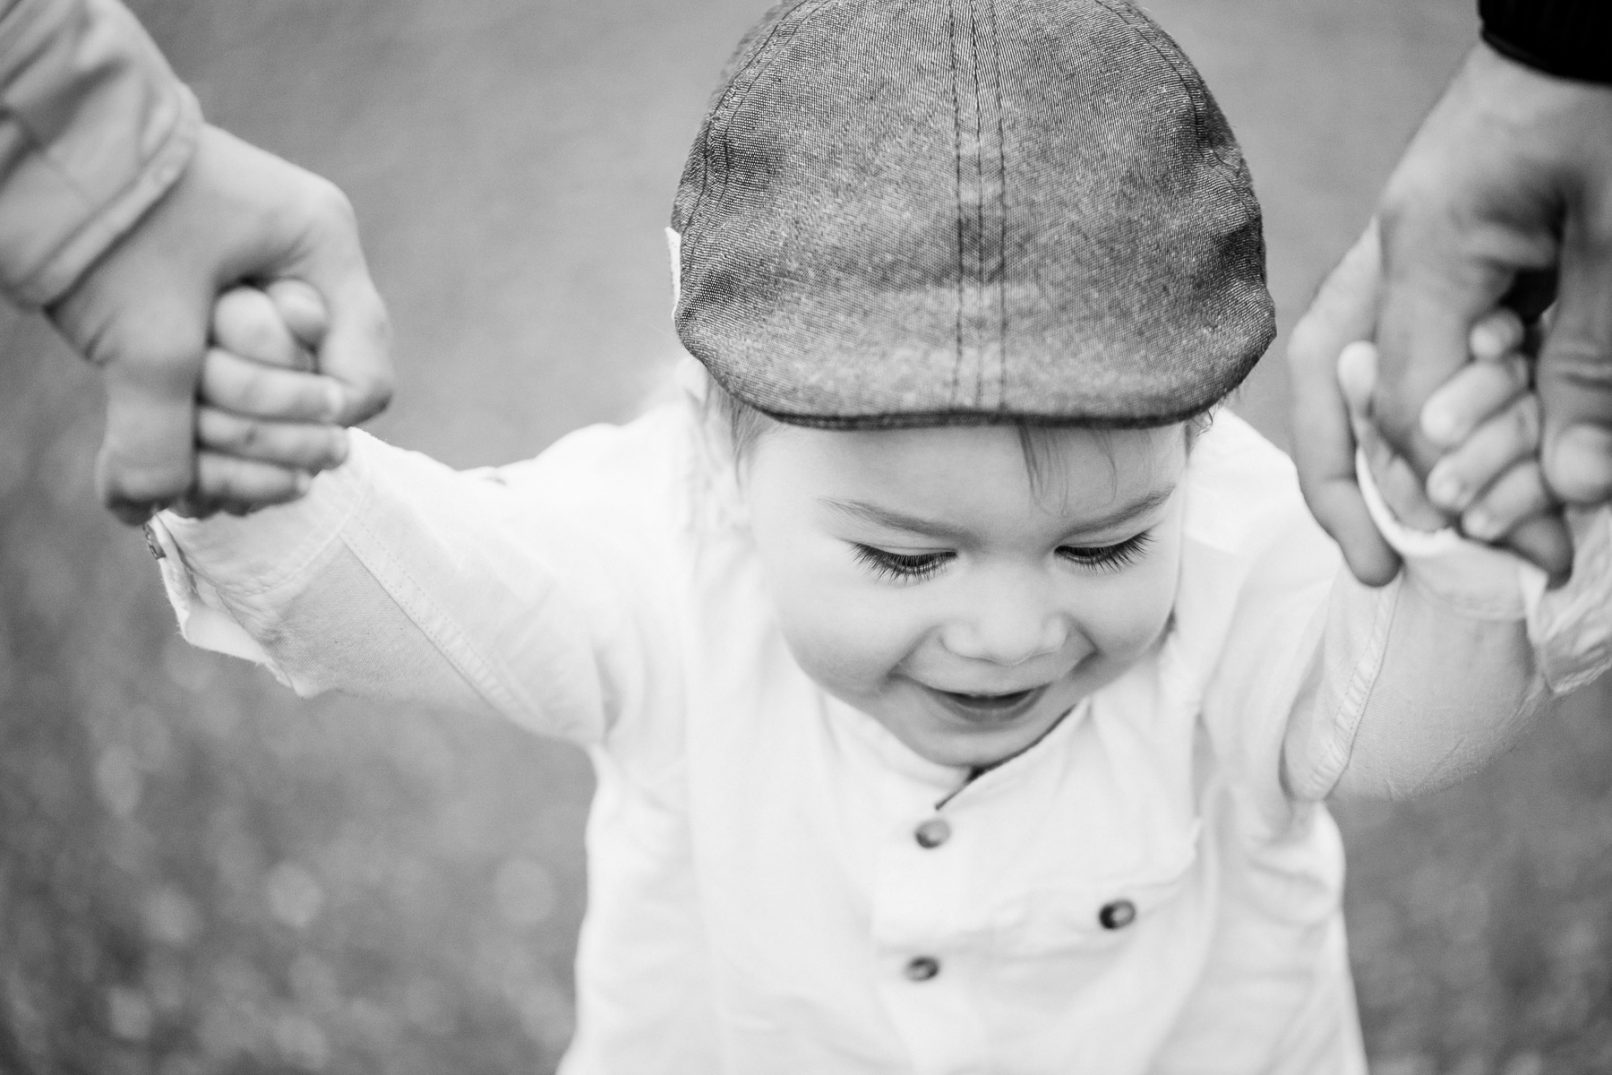 Lapsikuvaus 1-vuotias käsikädessä - Helsinki, Espoo, Siru Danielsson Photography